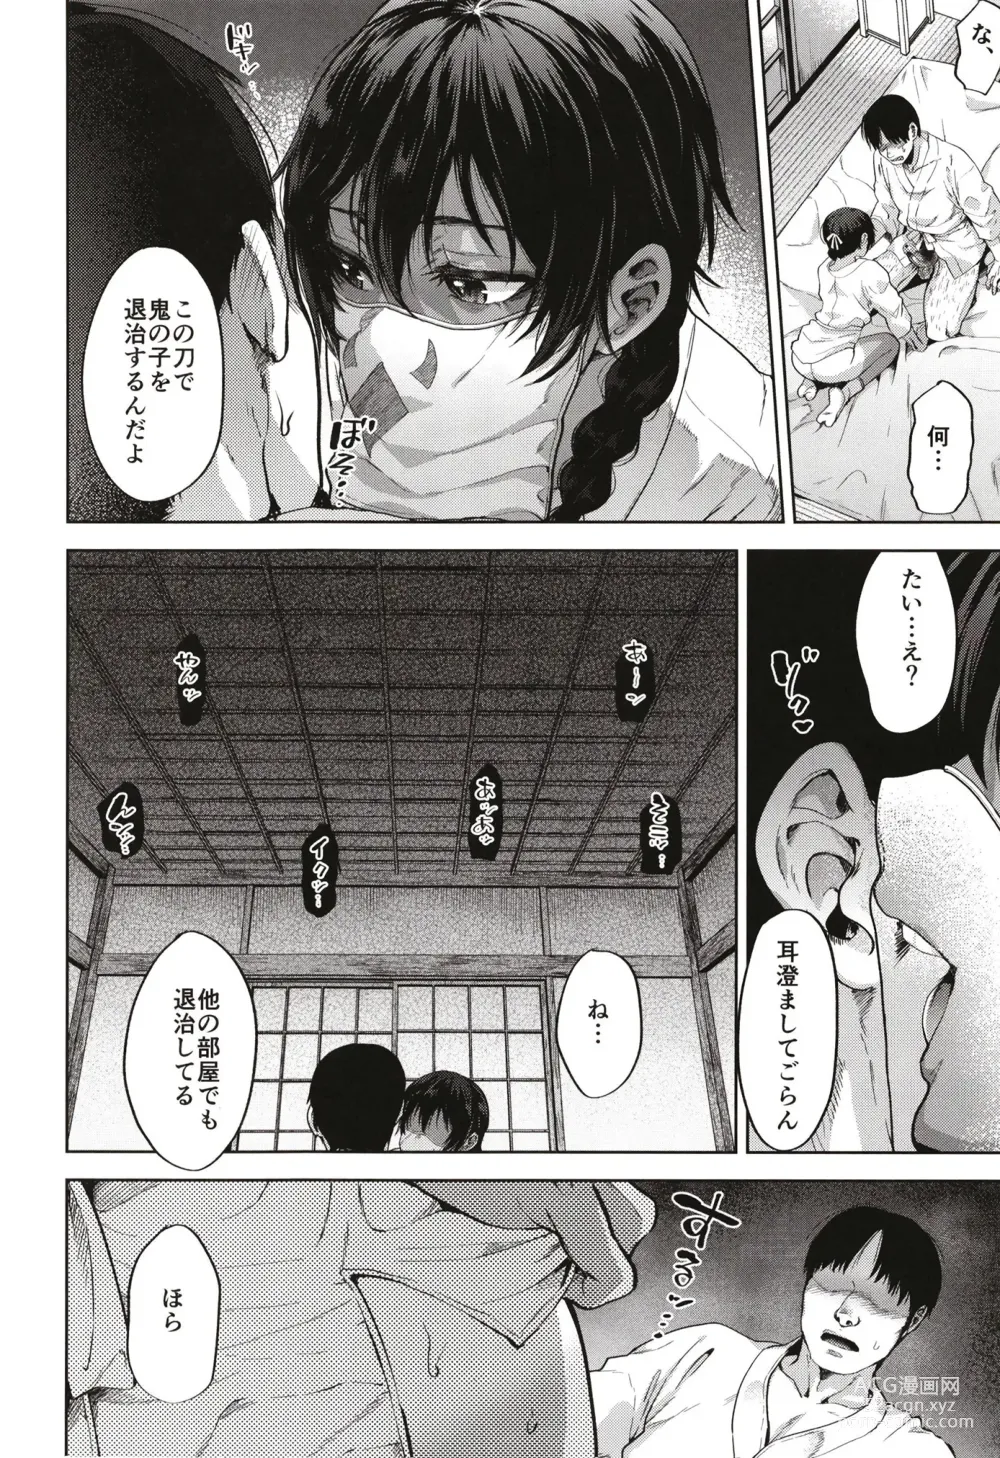 Page 12 of doujinshi Onigo matsurinoyoru